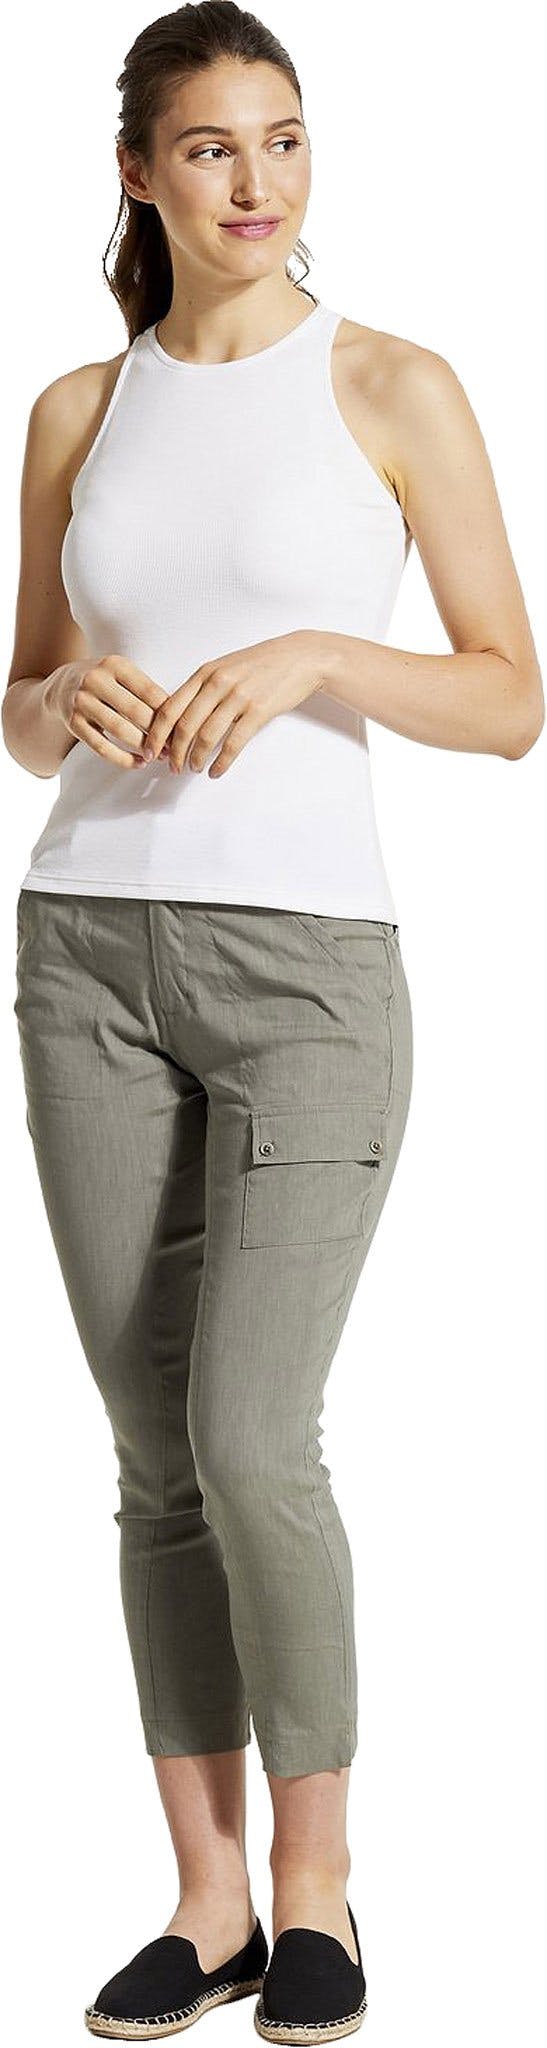 Numéro de l'image de la galerie de produits 1 pour le produit Pantalon MAT - Femme